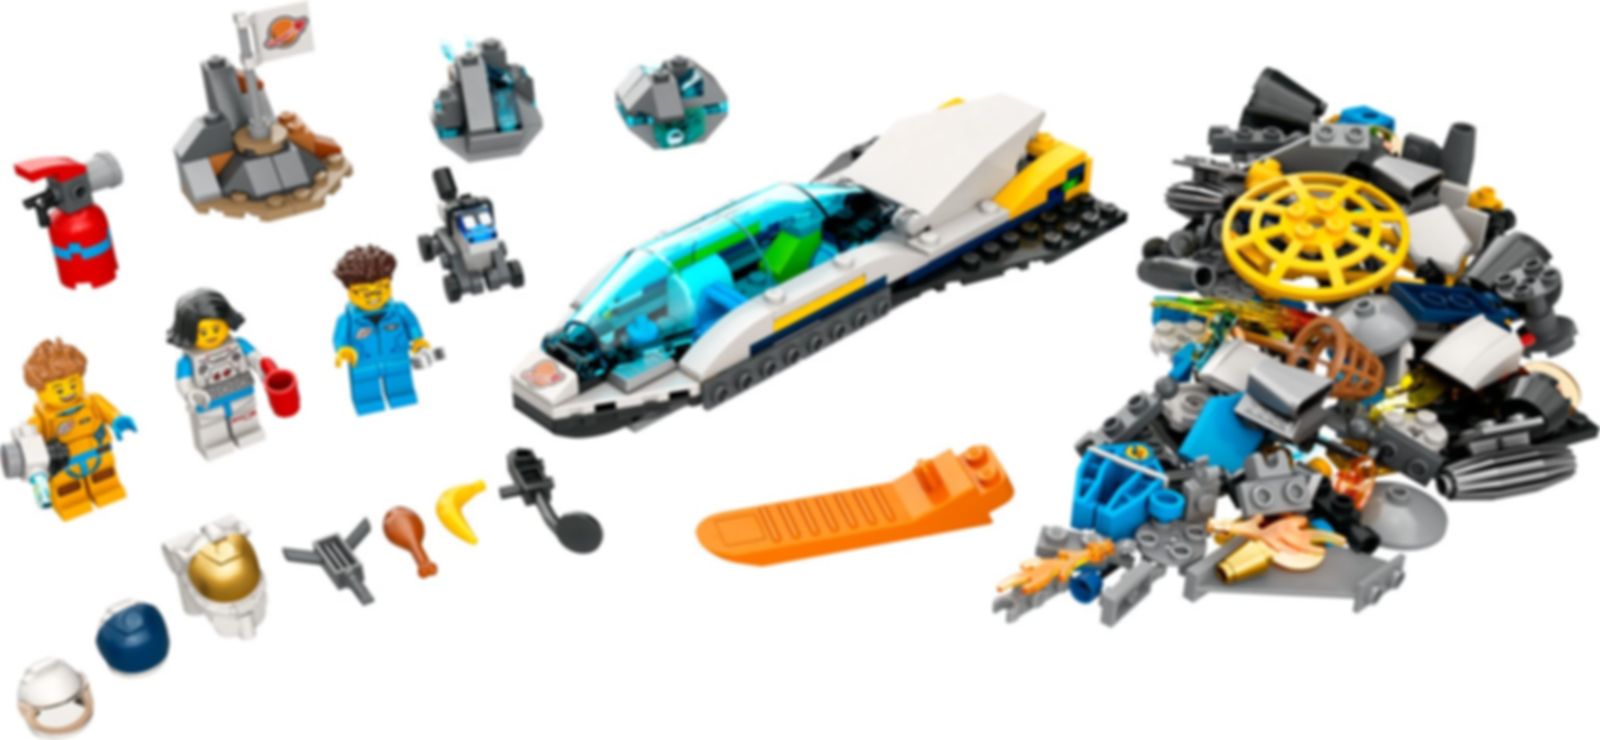 LEGO® City Missions d’exploration spatiale sur Mars composants